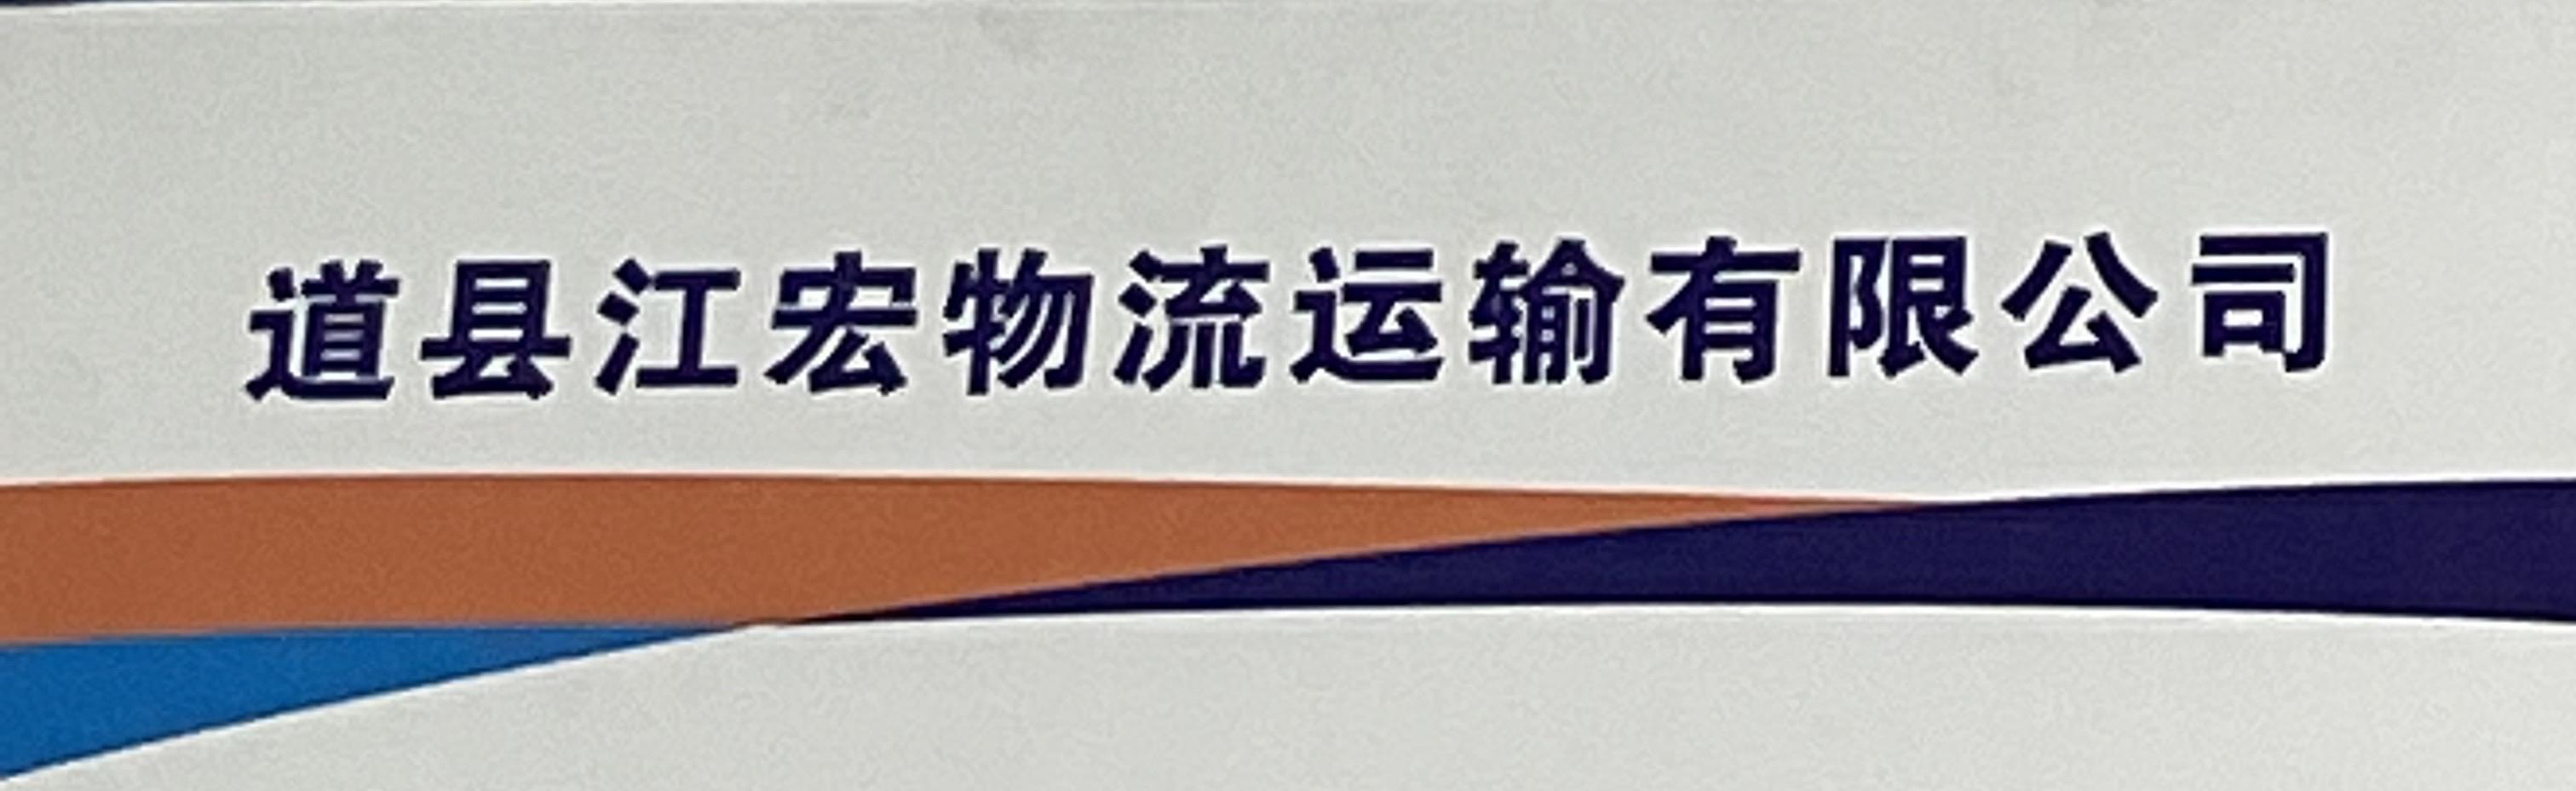 道县江宏物流运输有限公司